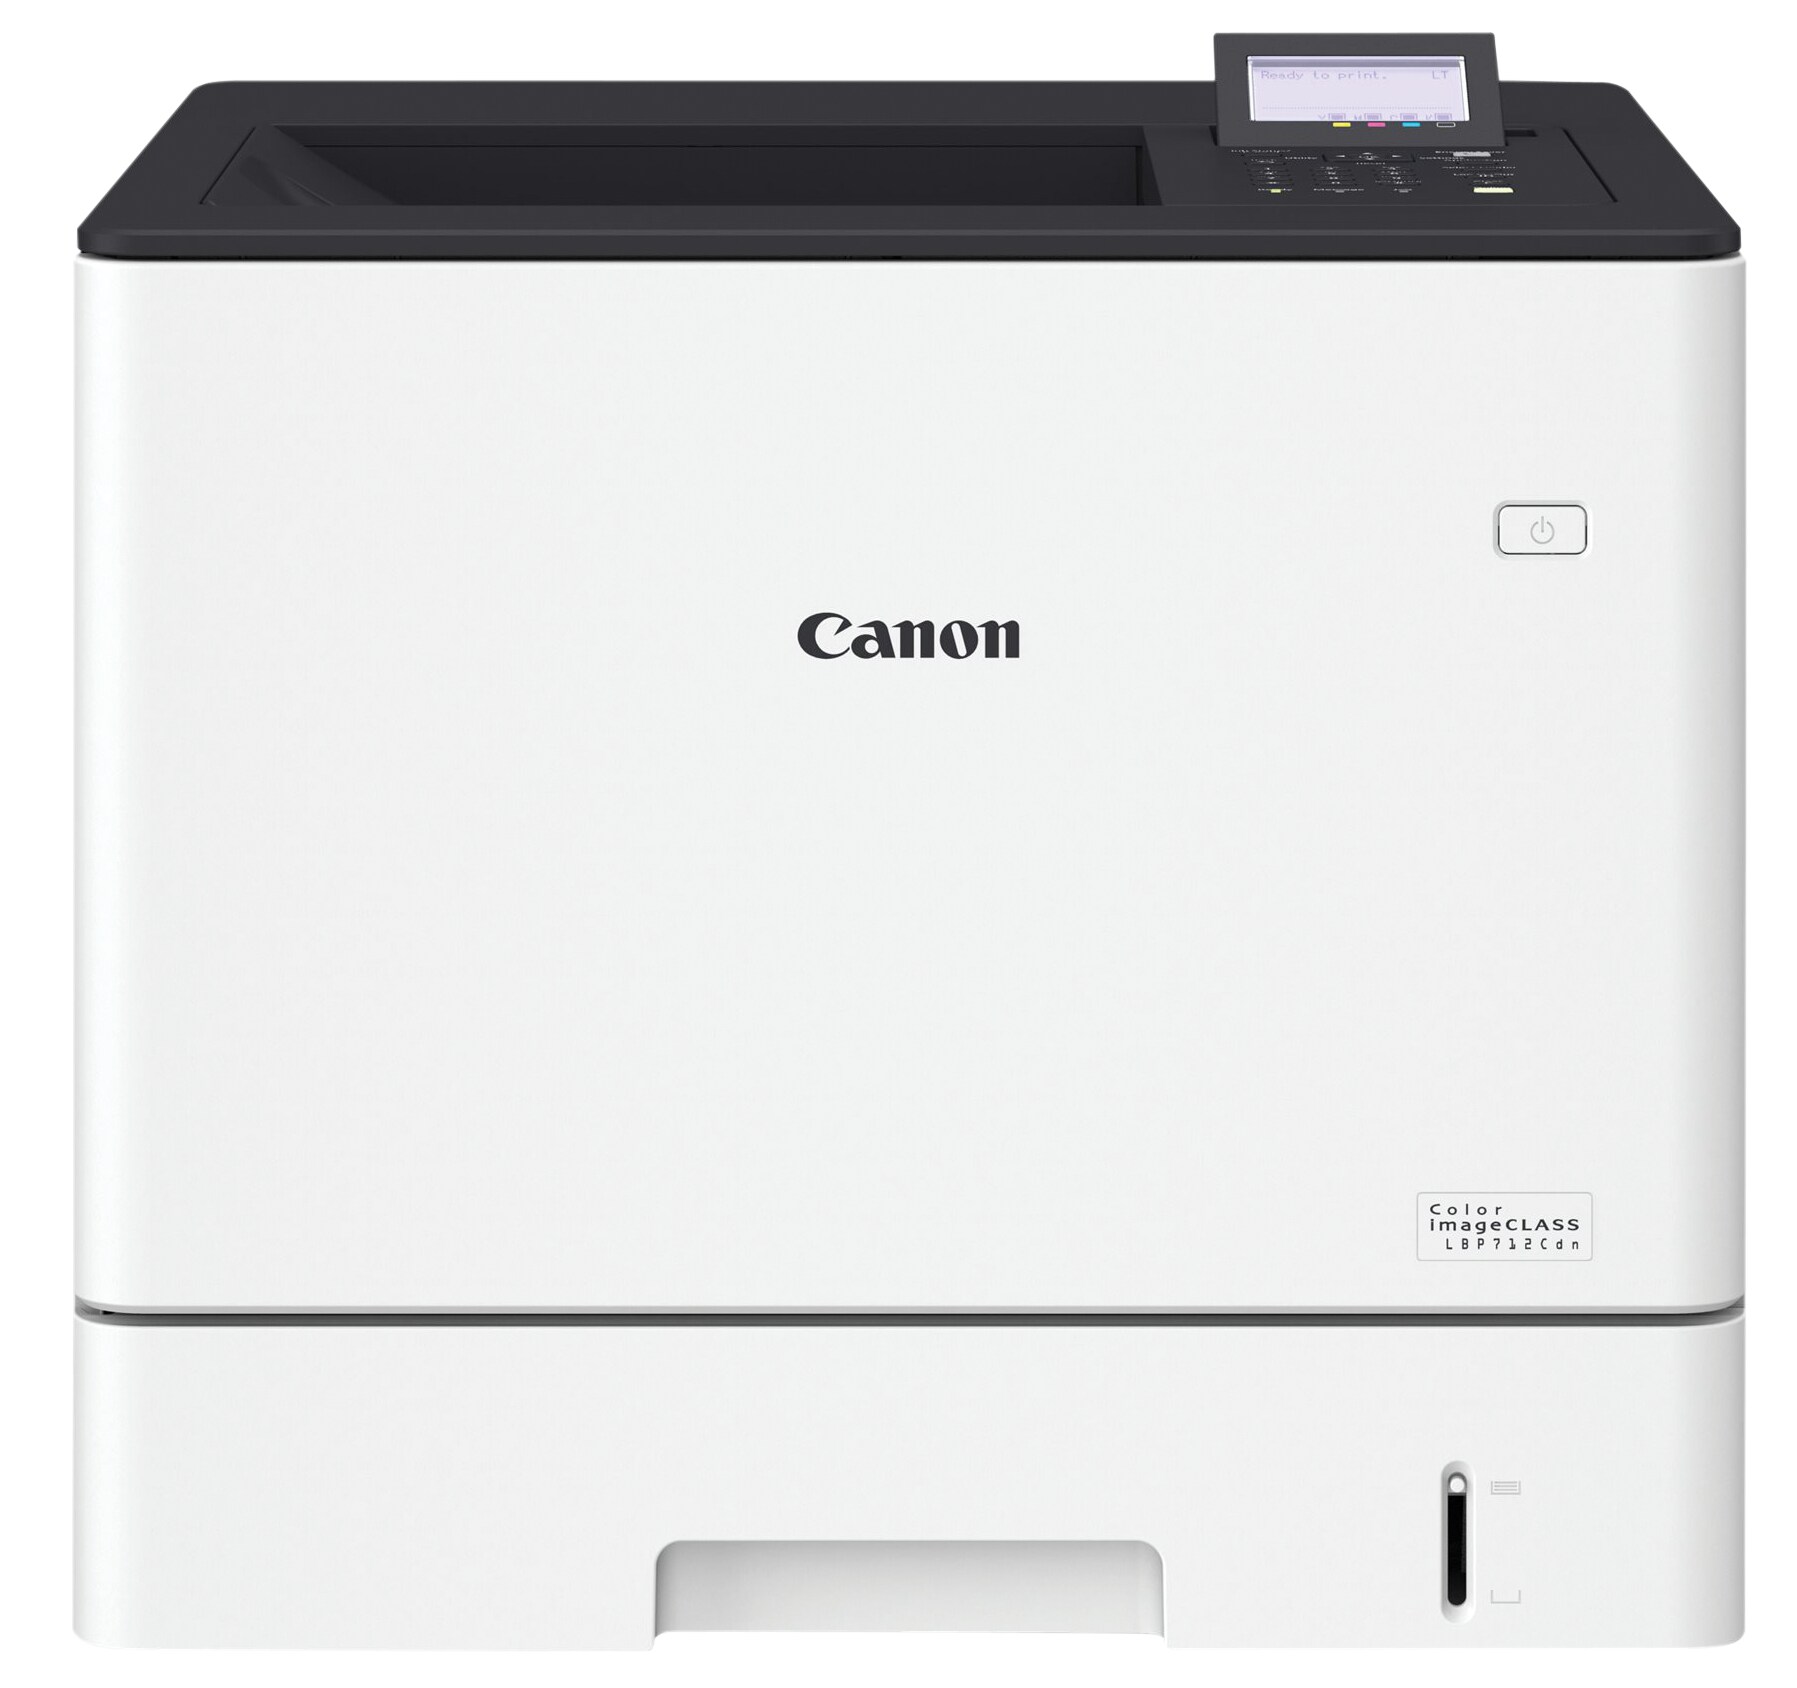 Canon imageCLASS LBP712Cdn - printer - color - laser